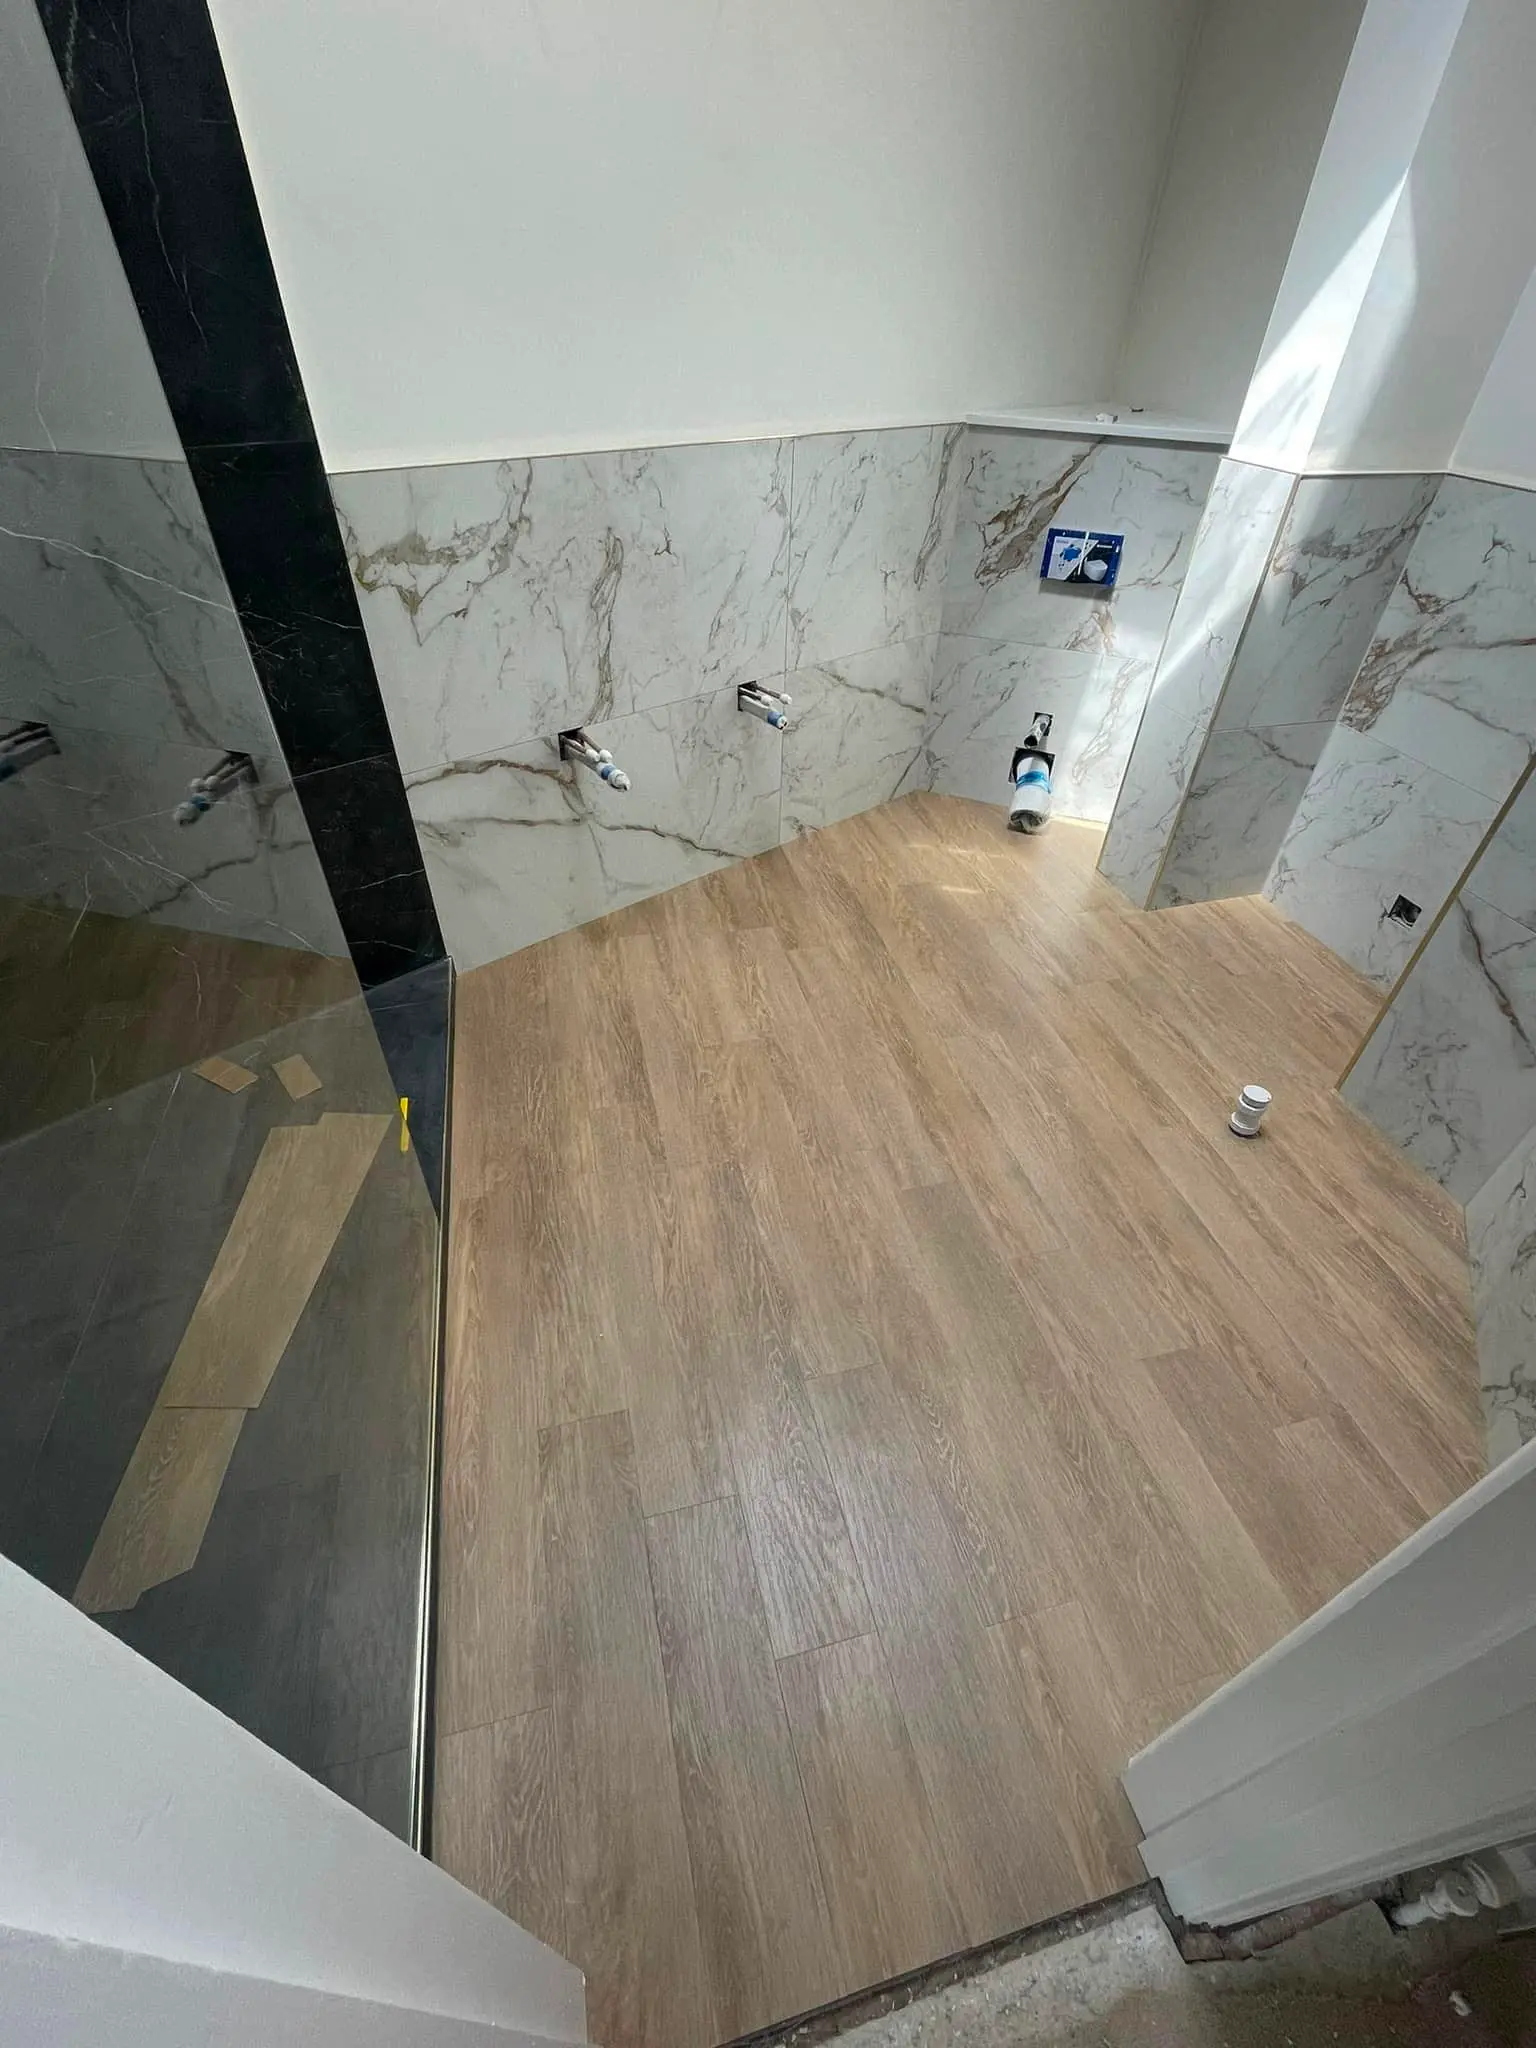 New Bathroom Floor by Watson Flooring